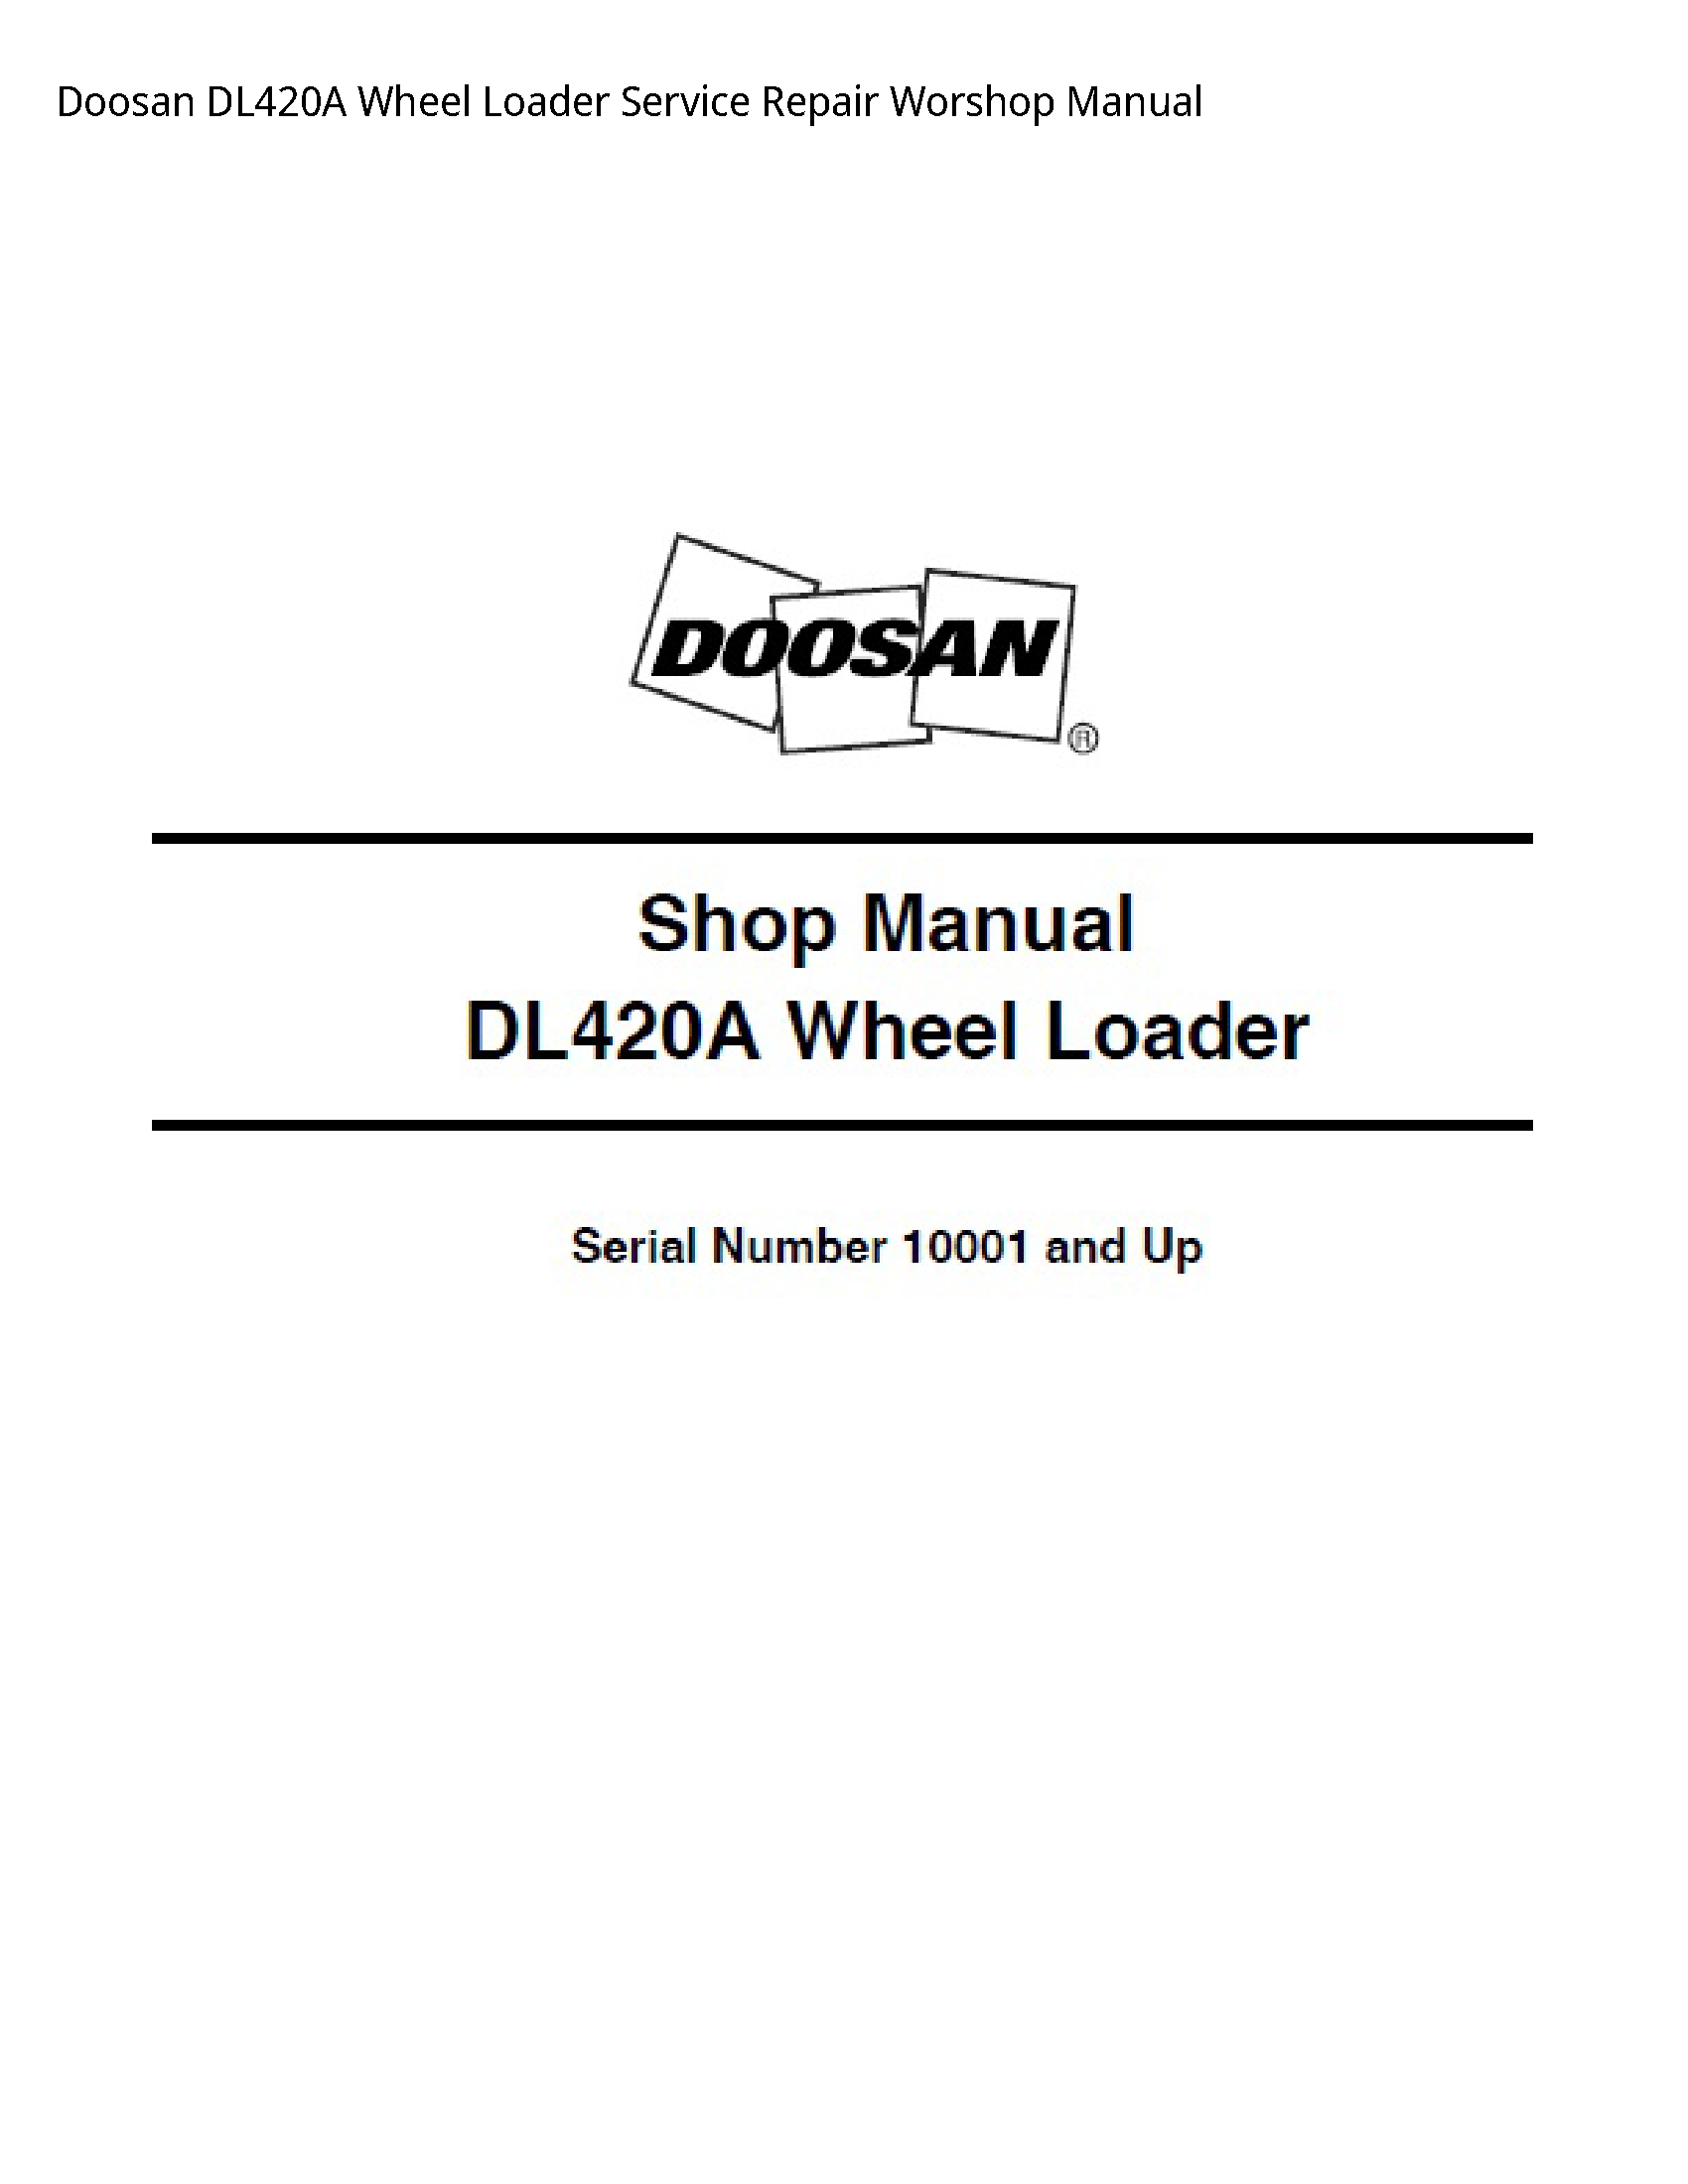 Doosan DL420A Wheel Loader manual